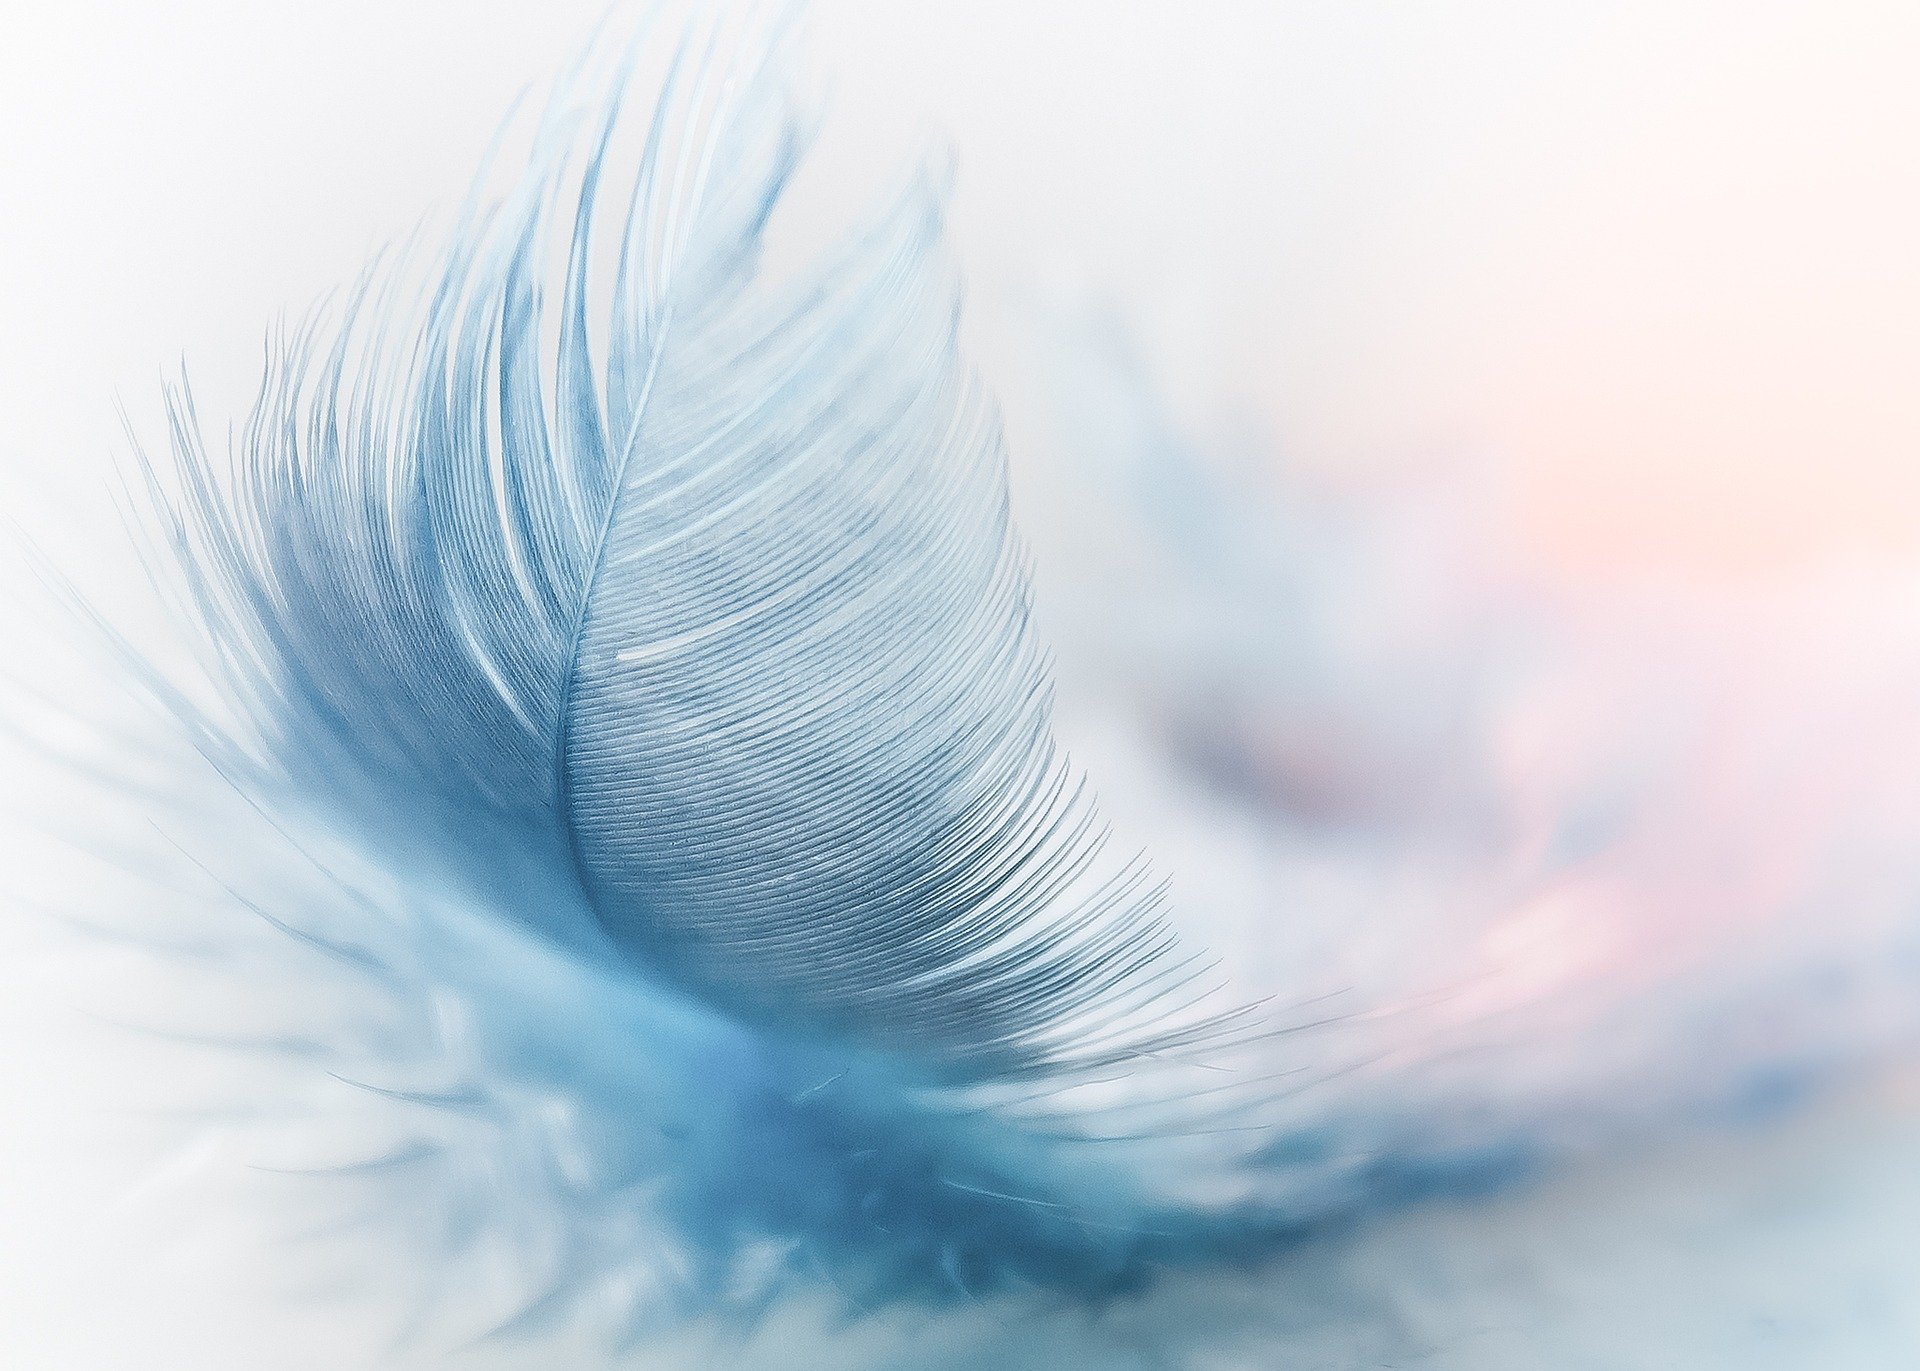 El significado de encontrar plumas y su mensaje según su color